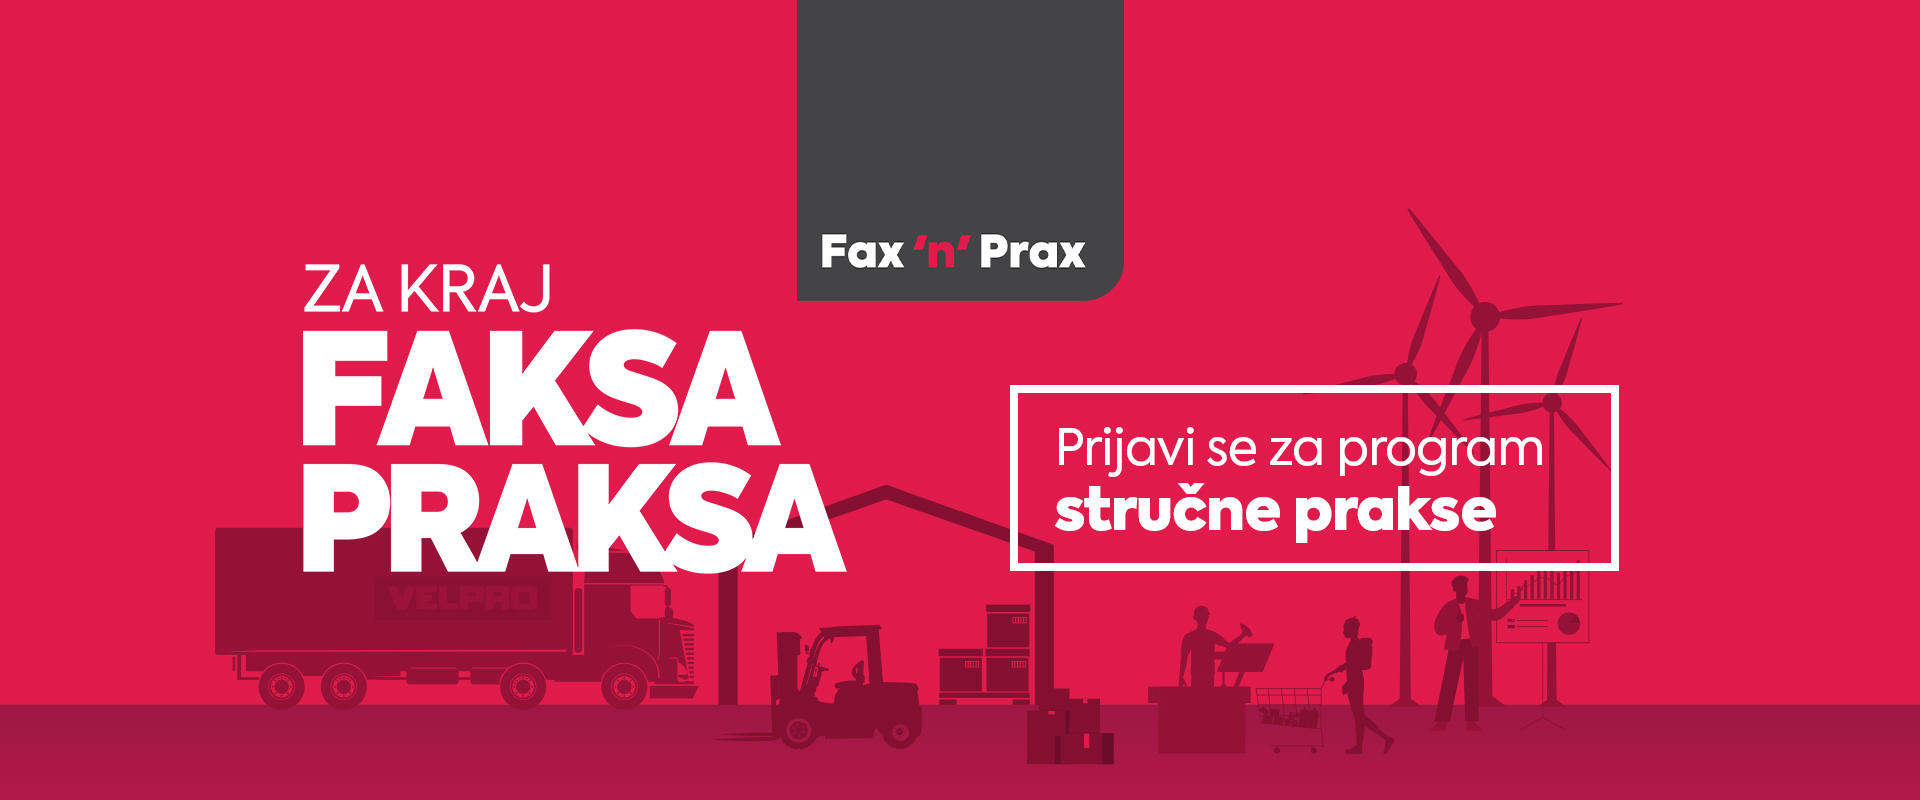 Fax n prax